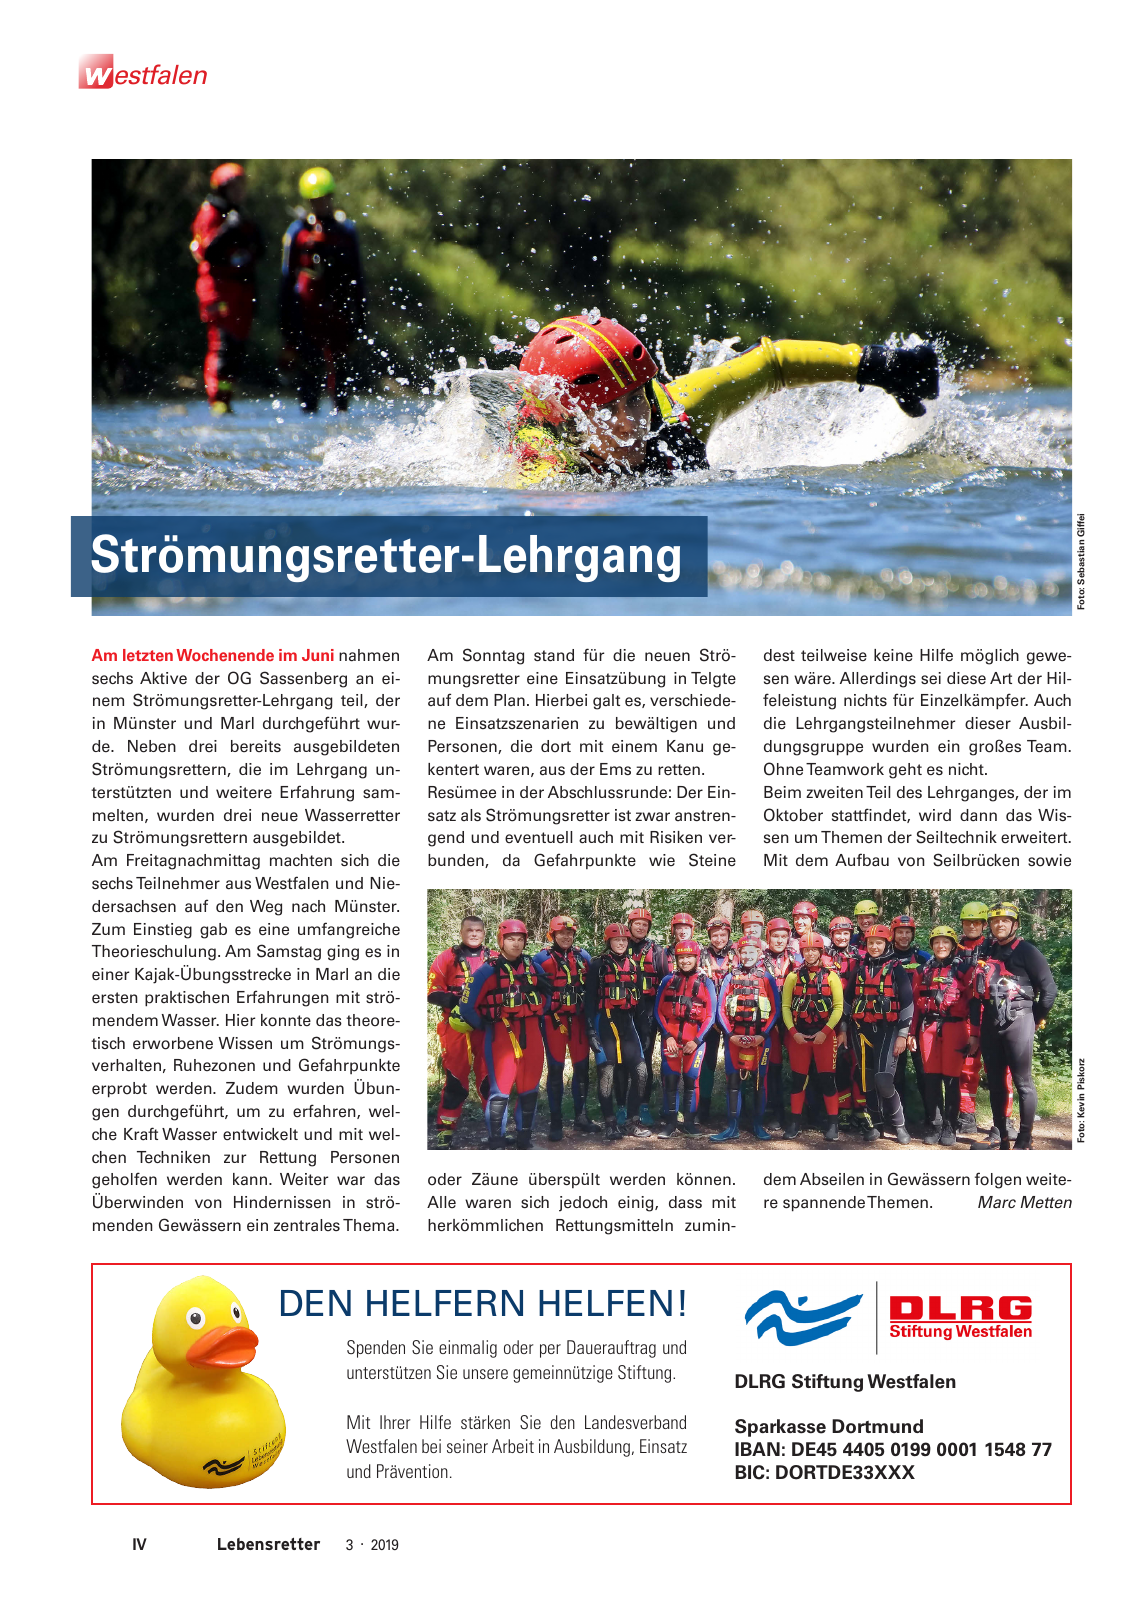 Vorschau Lebensretter 3/2019 - Westfalen Regionalausgabe Seite 6